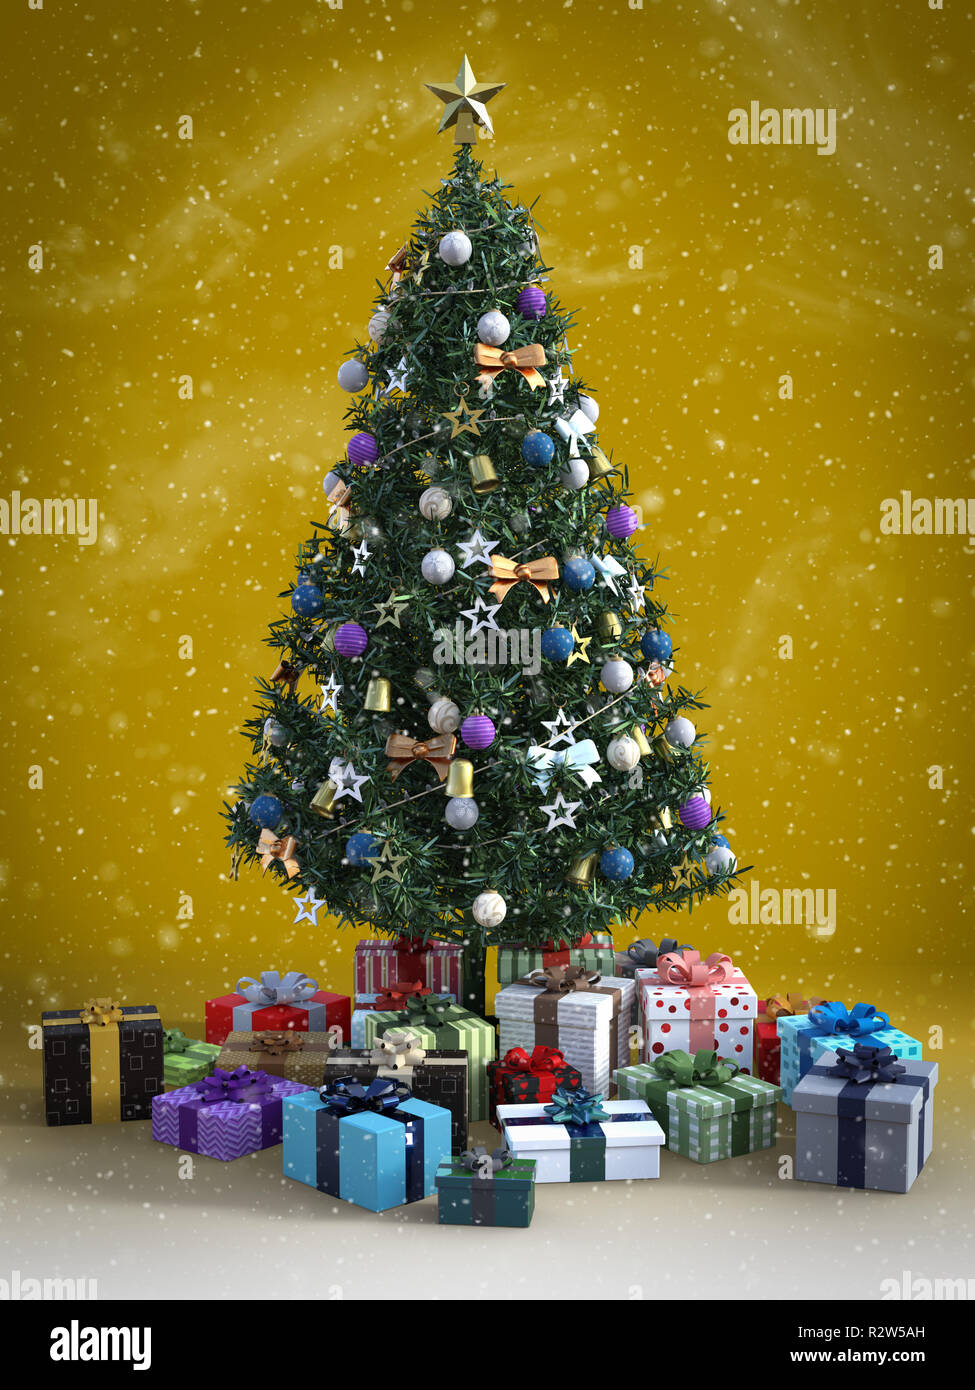 Le rendu 3D d'un arbre de Noël décoré avec beaucoup de cadeaux sous elle. Arrière-plan de couleur nostalgique avec un sentiment vintage et de la neige dans l'air. Banque D'Images